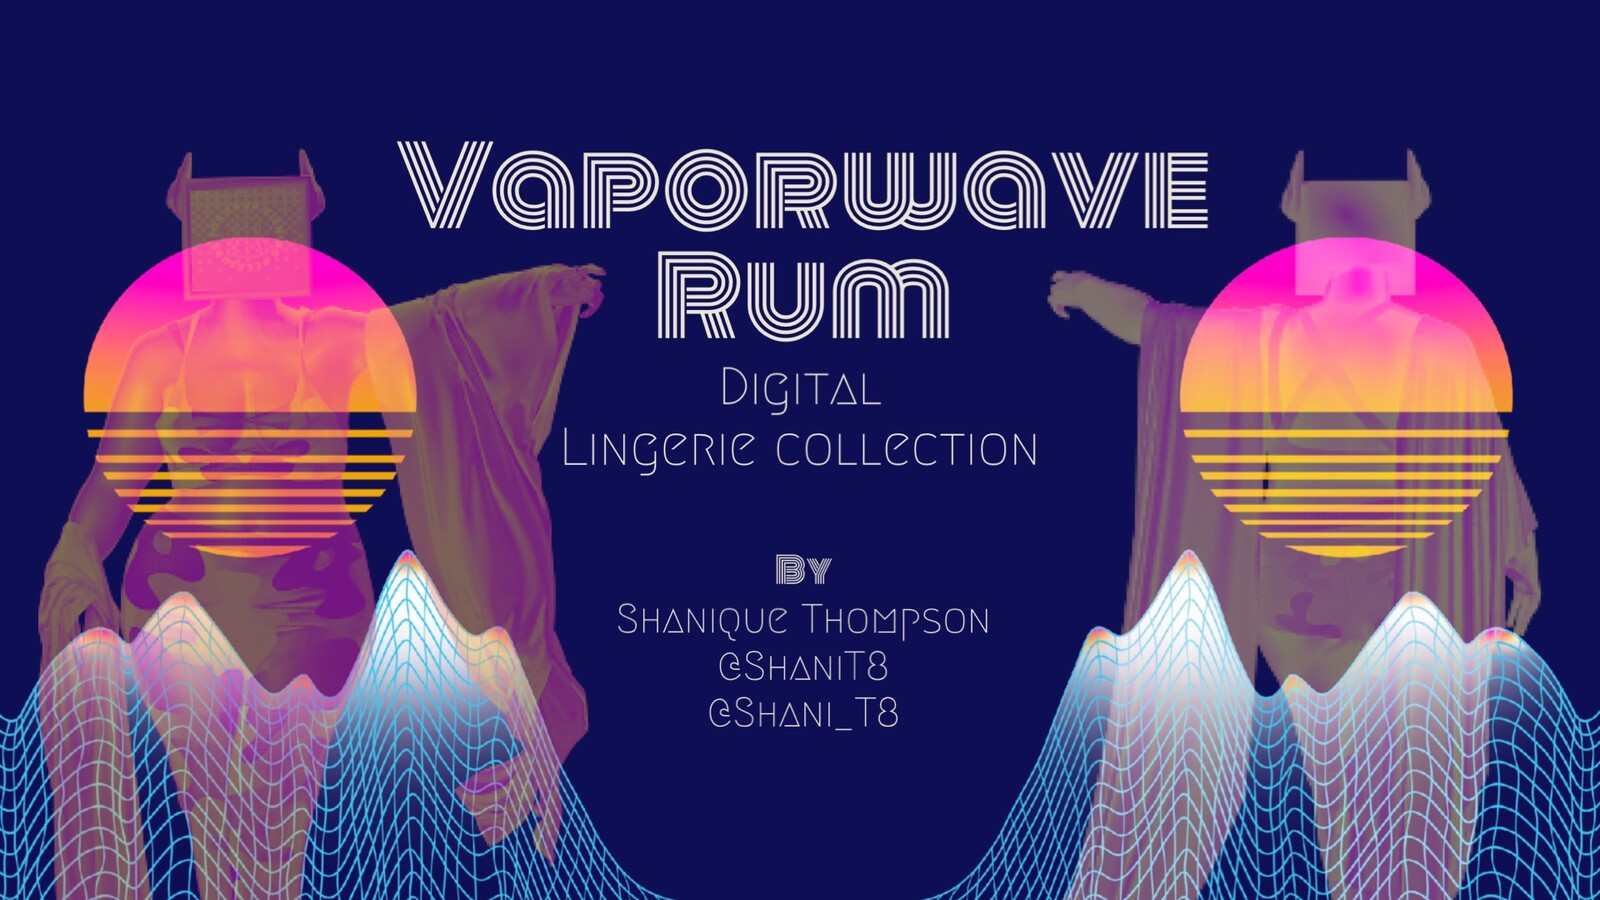 Vaporwave rum banner